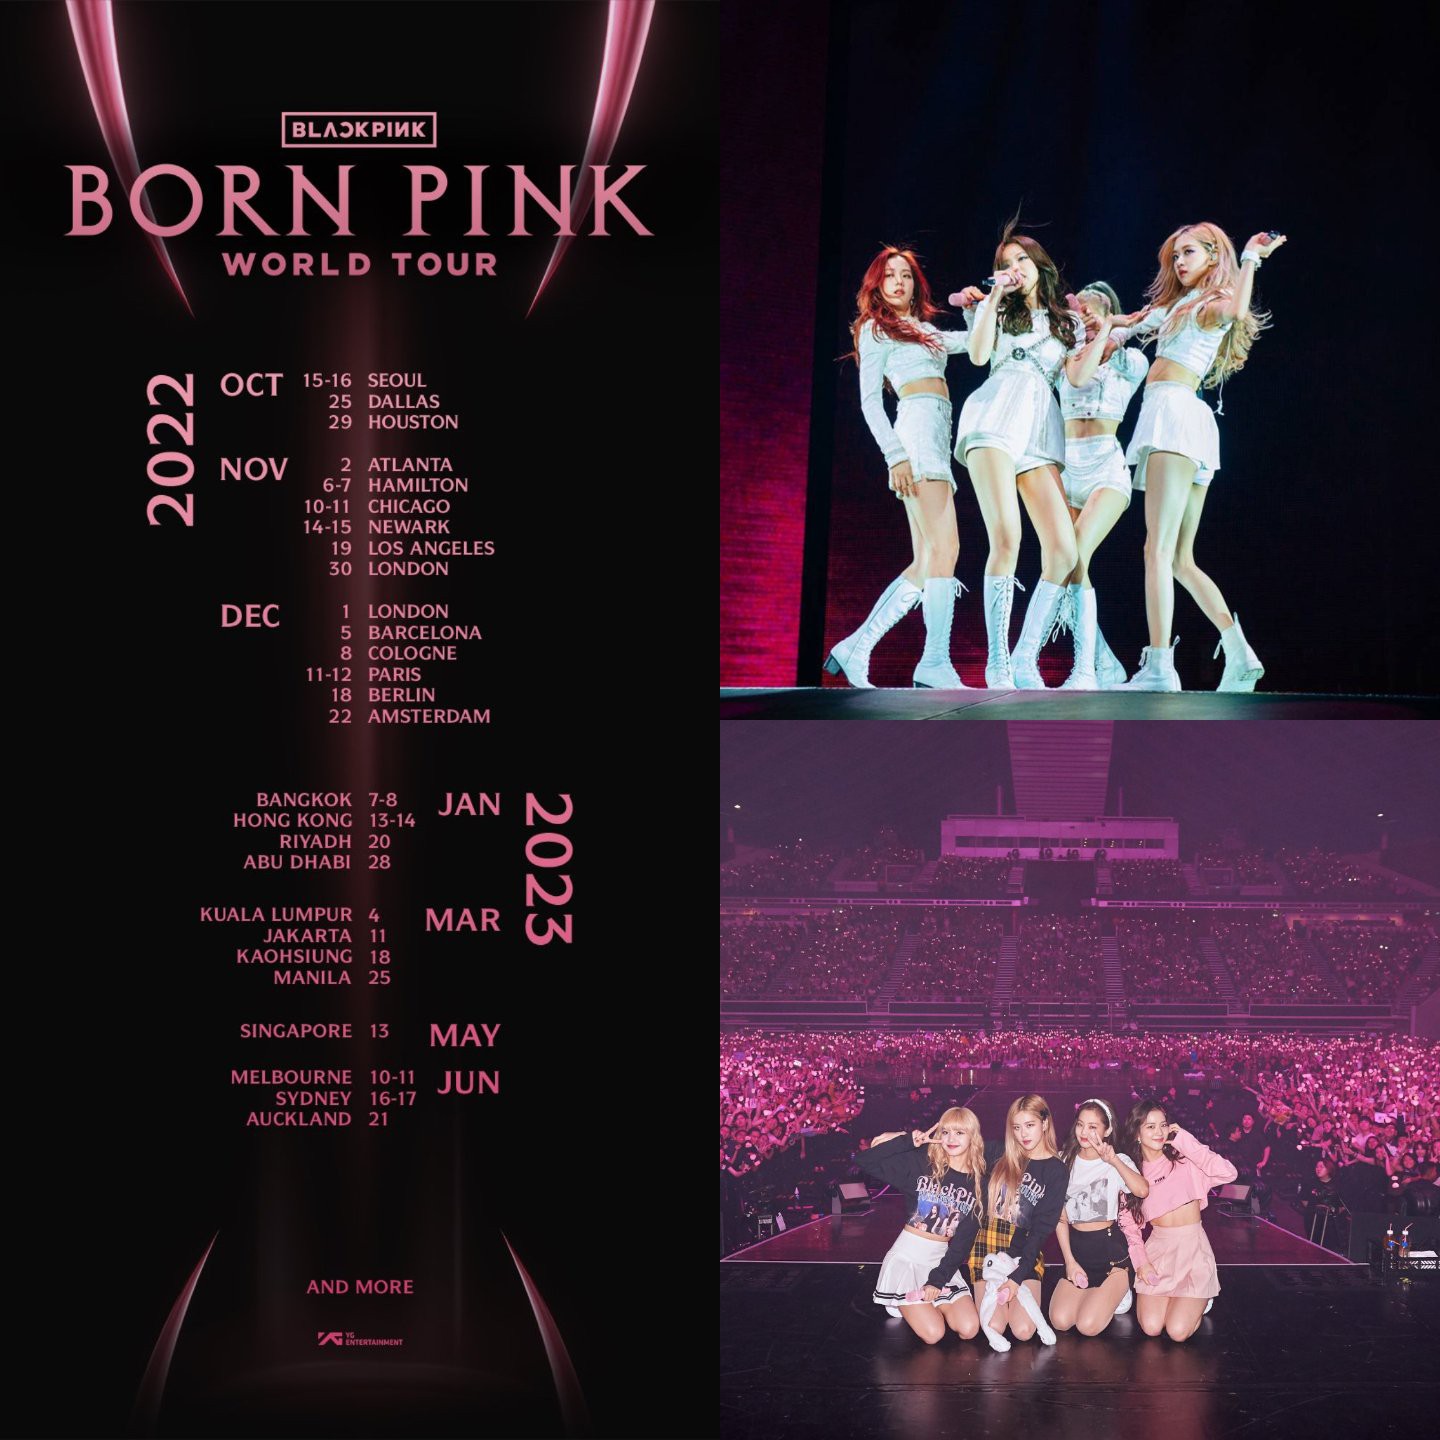 Sau khi comeback với full album BORN PINK - BLACKPINK sẽ tổ chức tour diễn thế giới với quy mô chưa từng có đối với một nhóm nhạc nữ Kpop